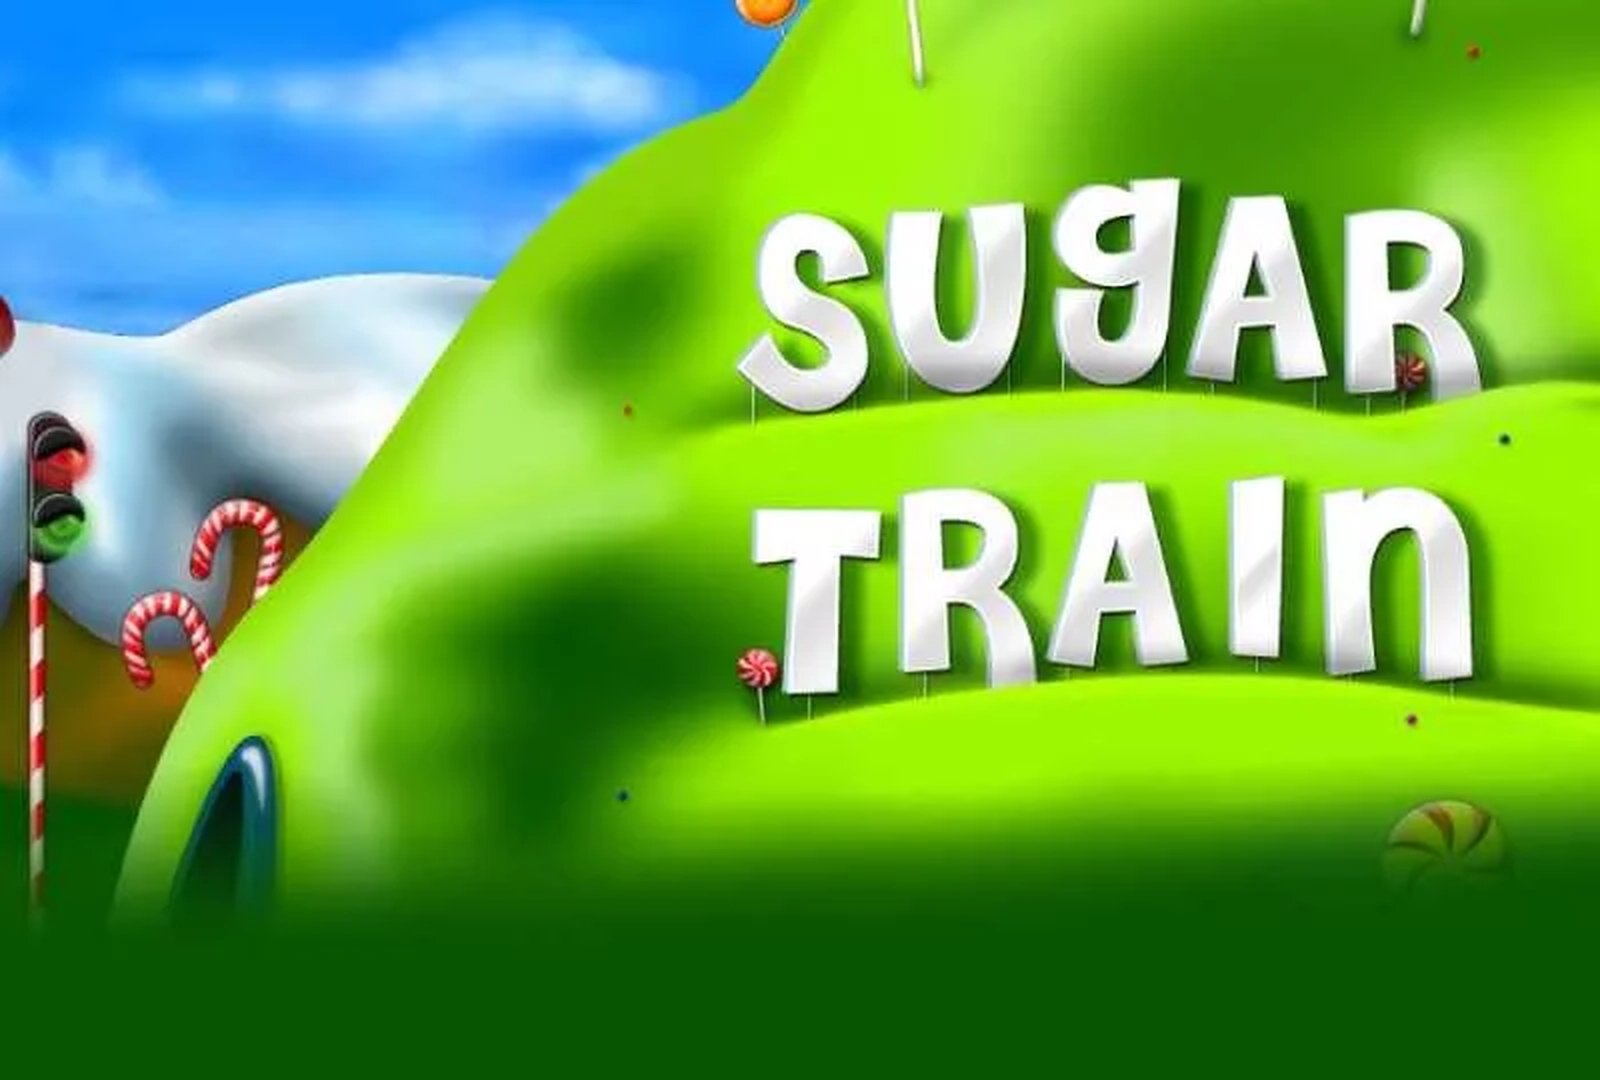 Sugar Train Jackpot